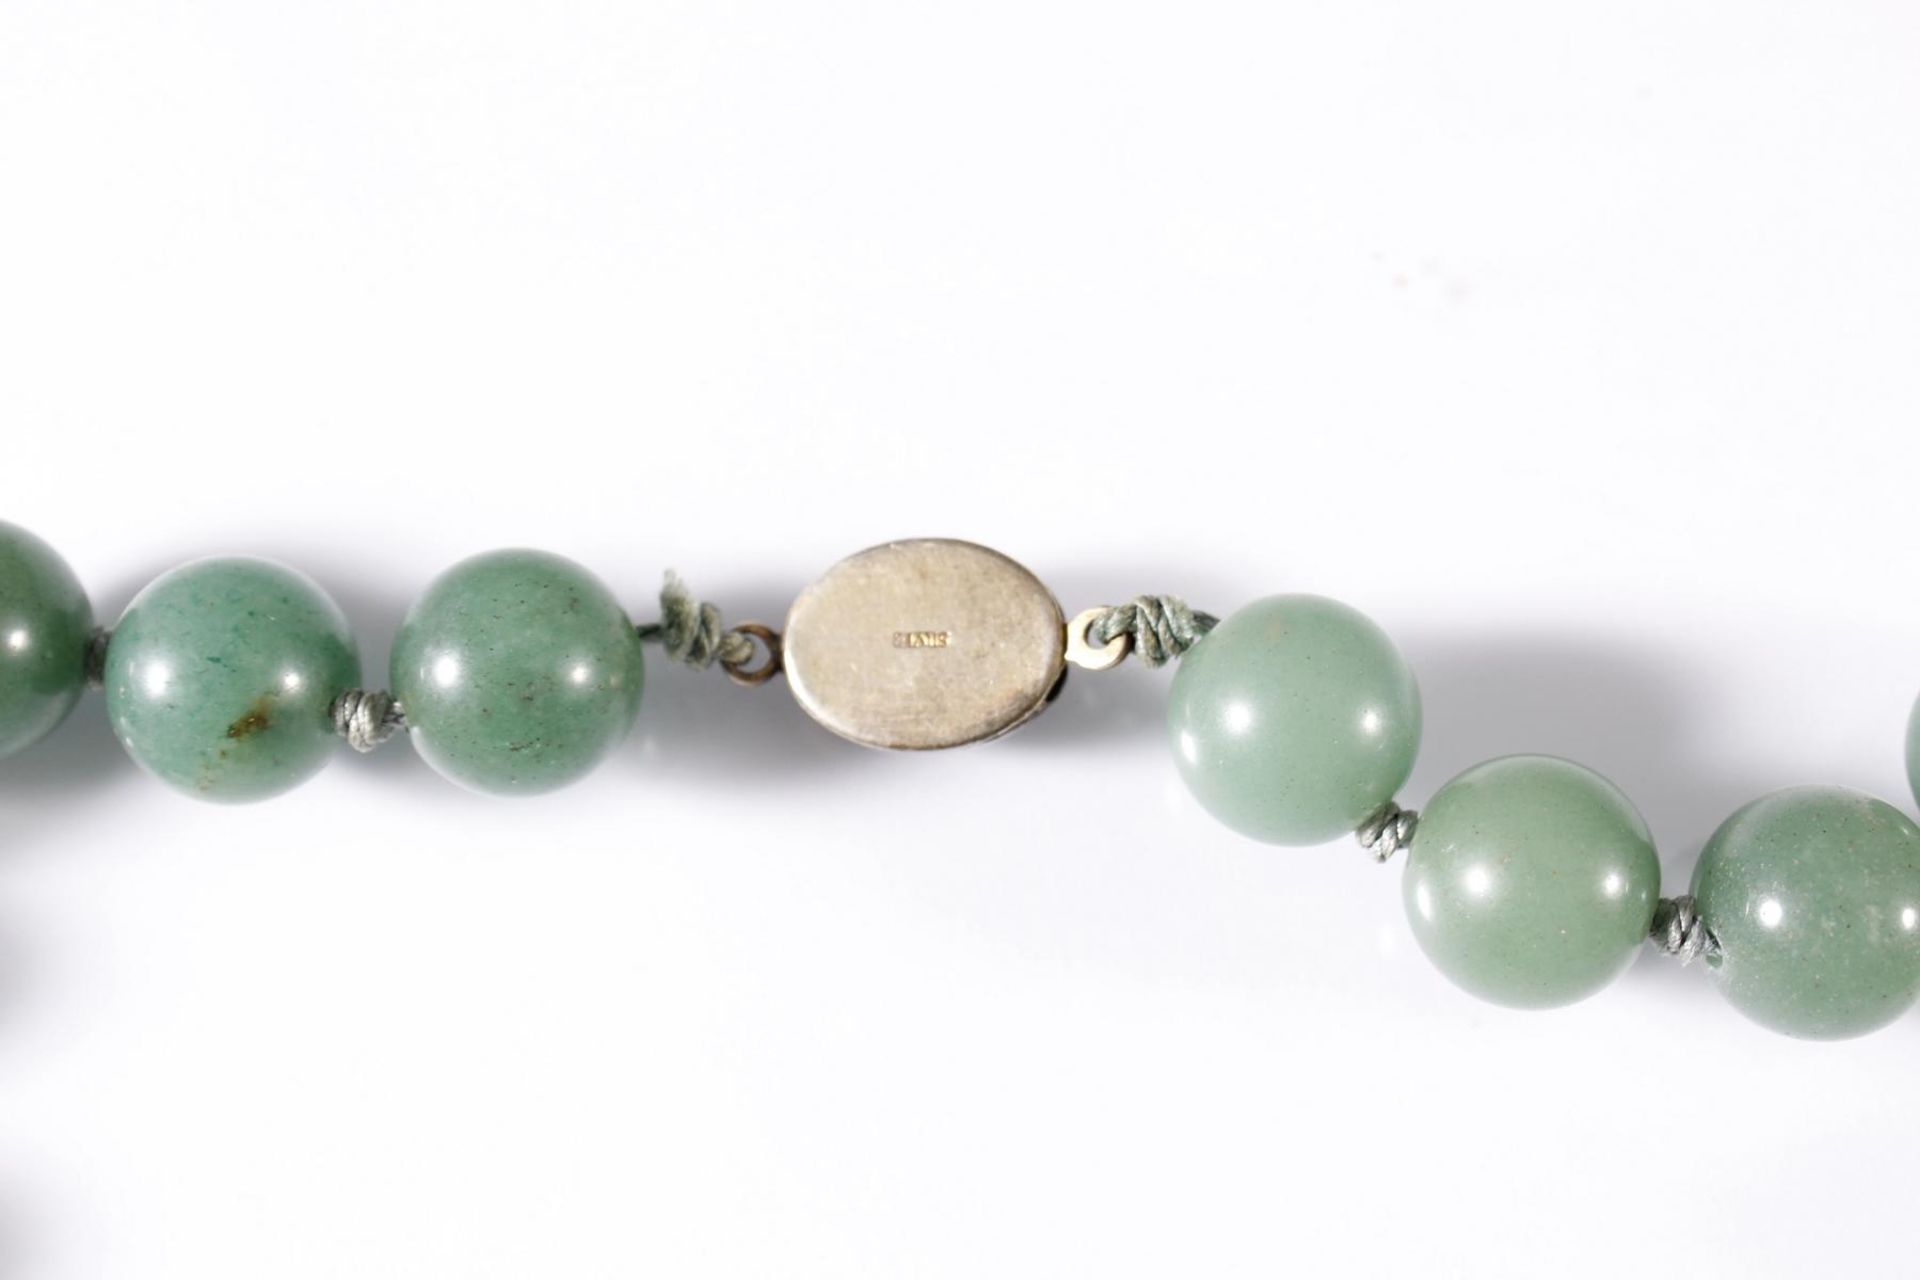 Jade Halskette, ChinaDurchmesser der Kugeln ca. 13 mm. Gesamtlänge ca. 68 cm. Kugeln einzeln im - Bild 3 aus 3